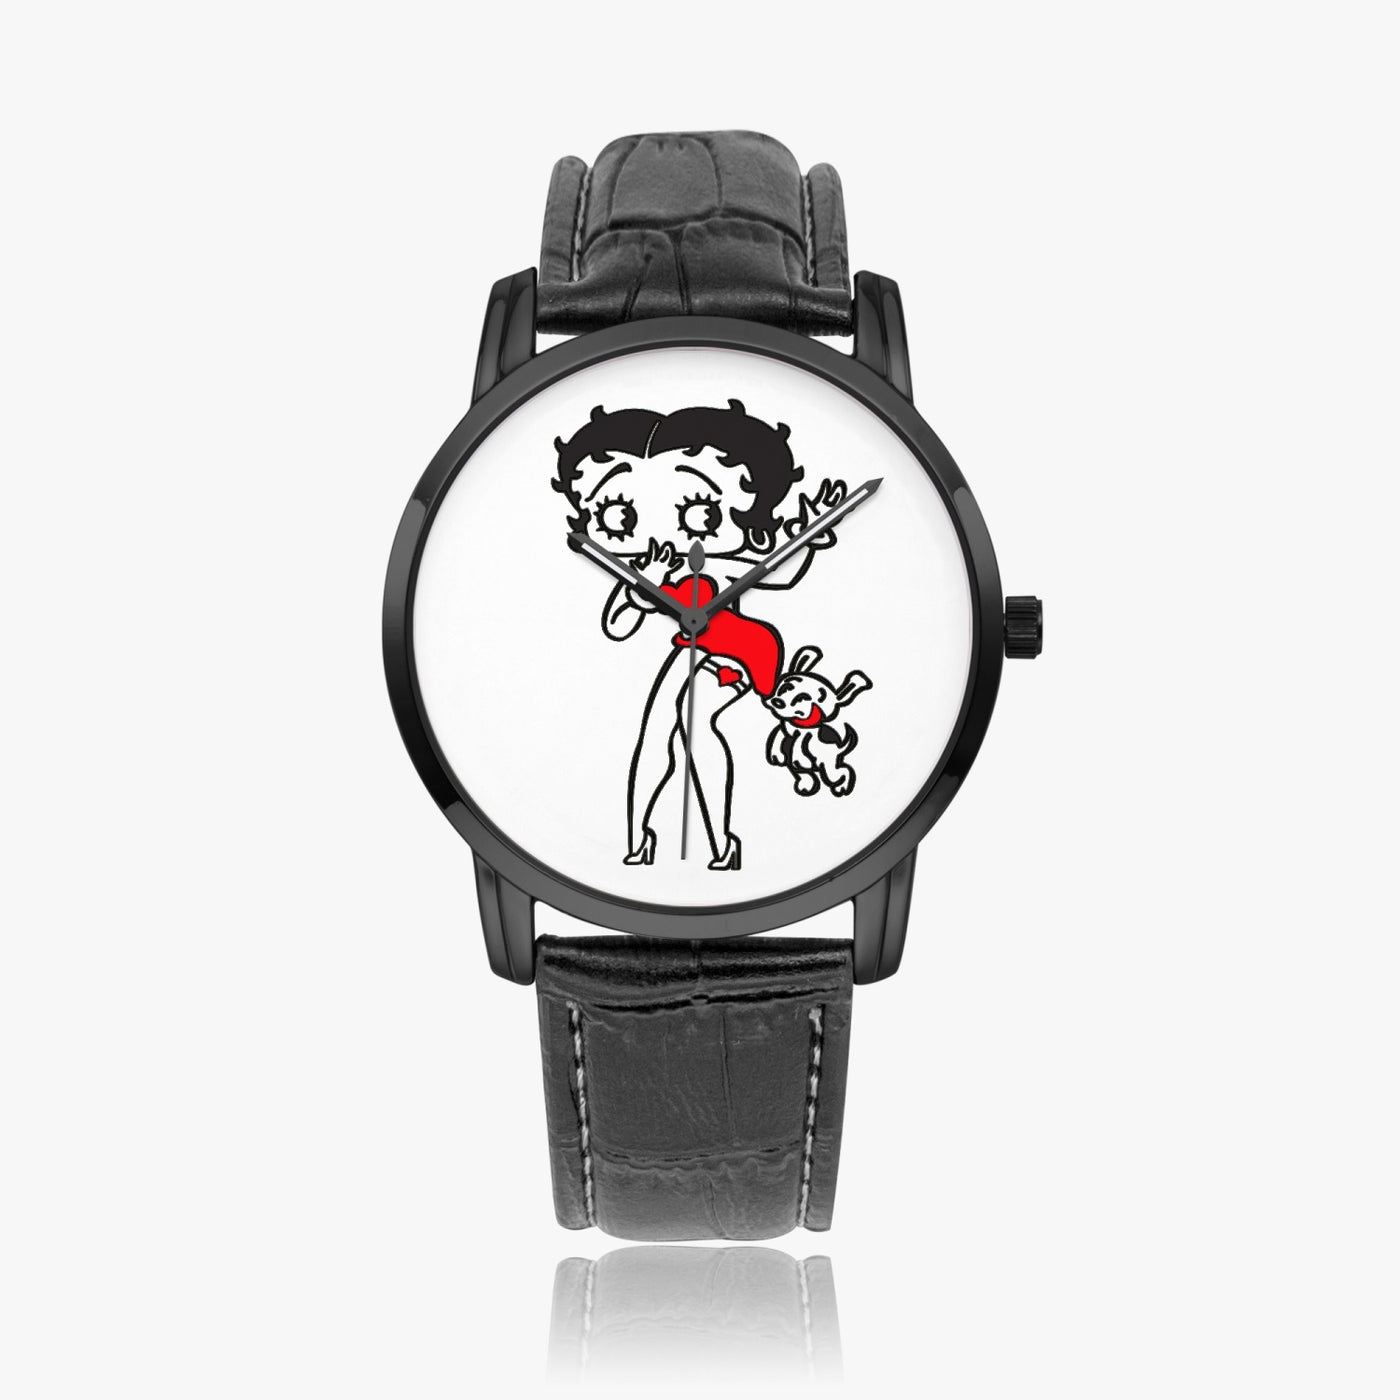 Boop Boop Bedoop - Instafamous Wide Type Quartz watch